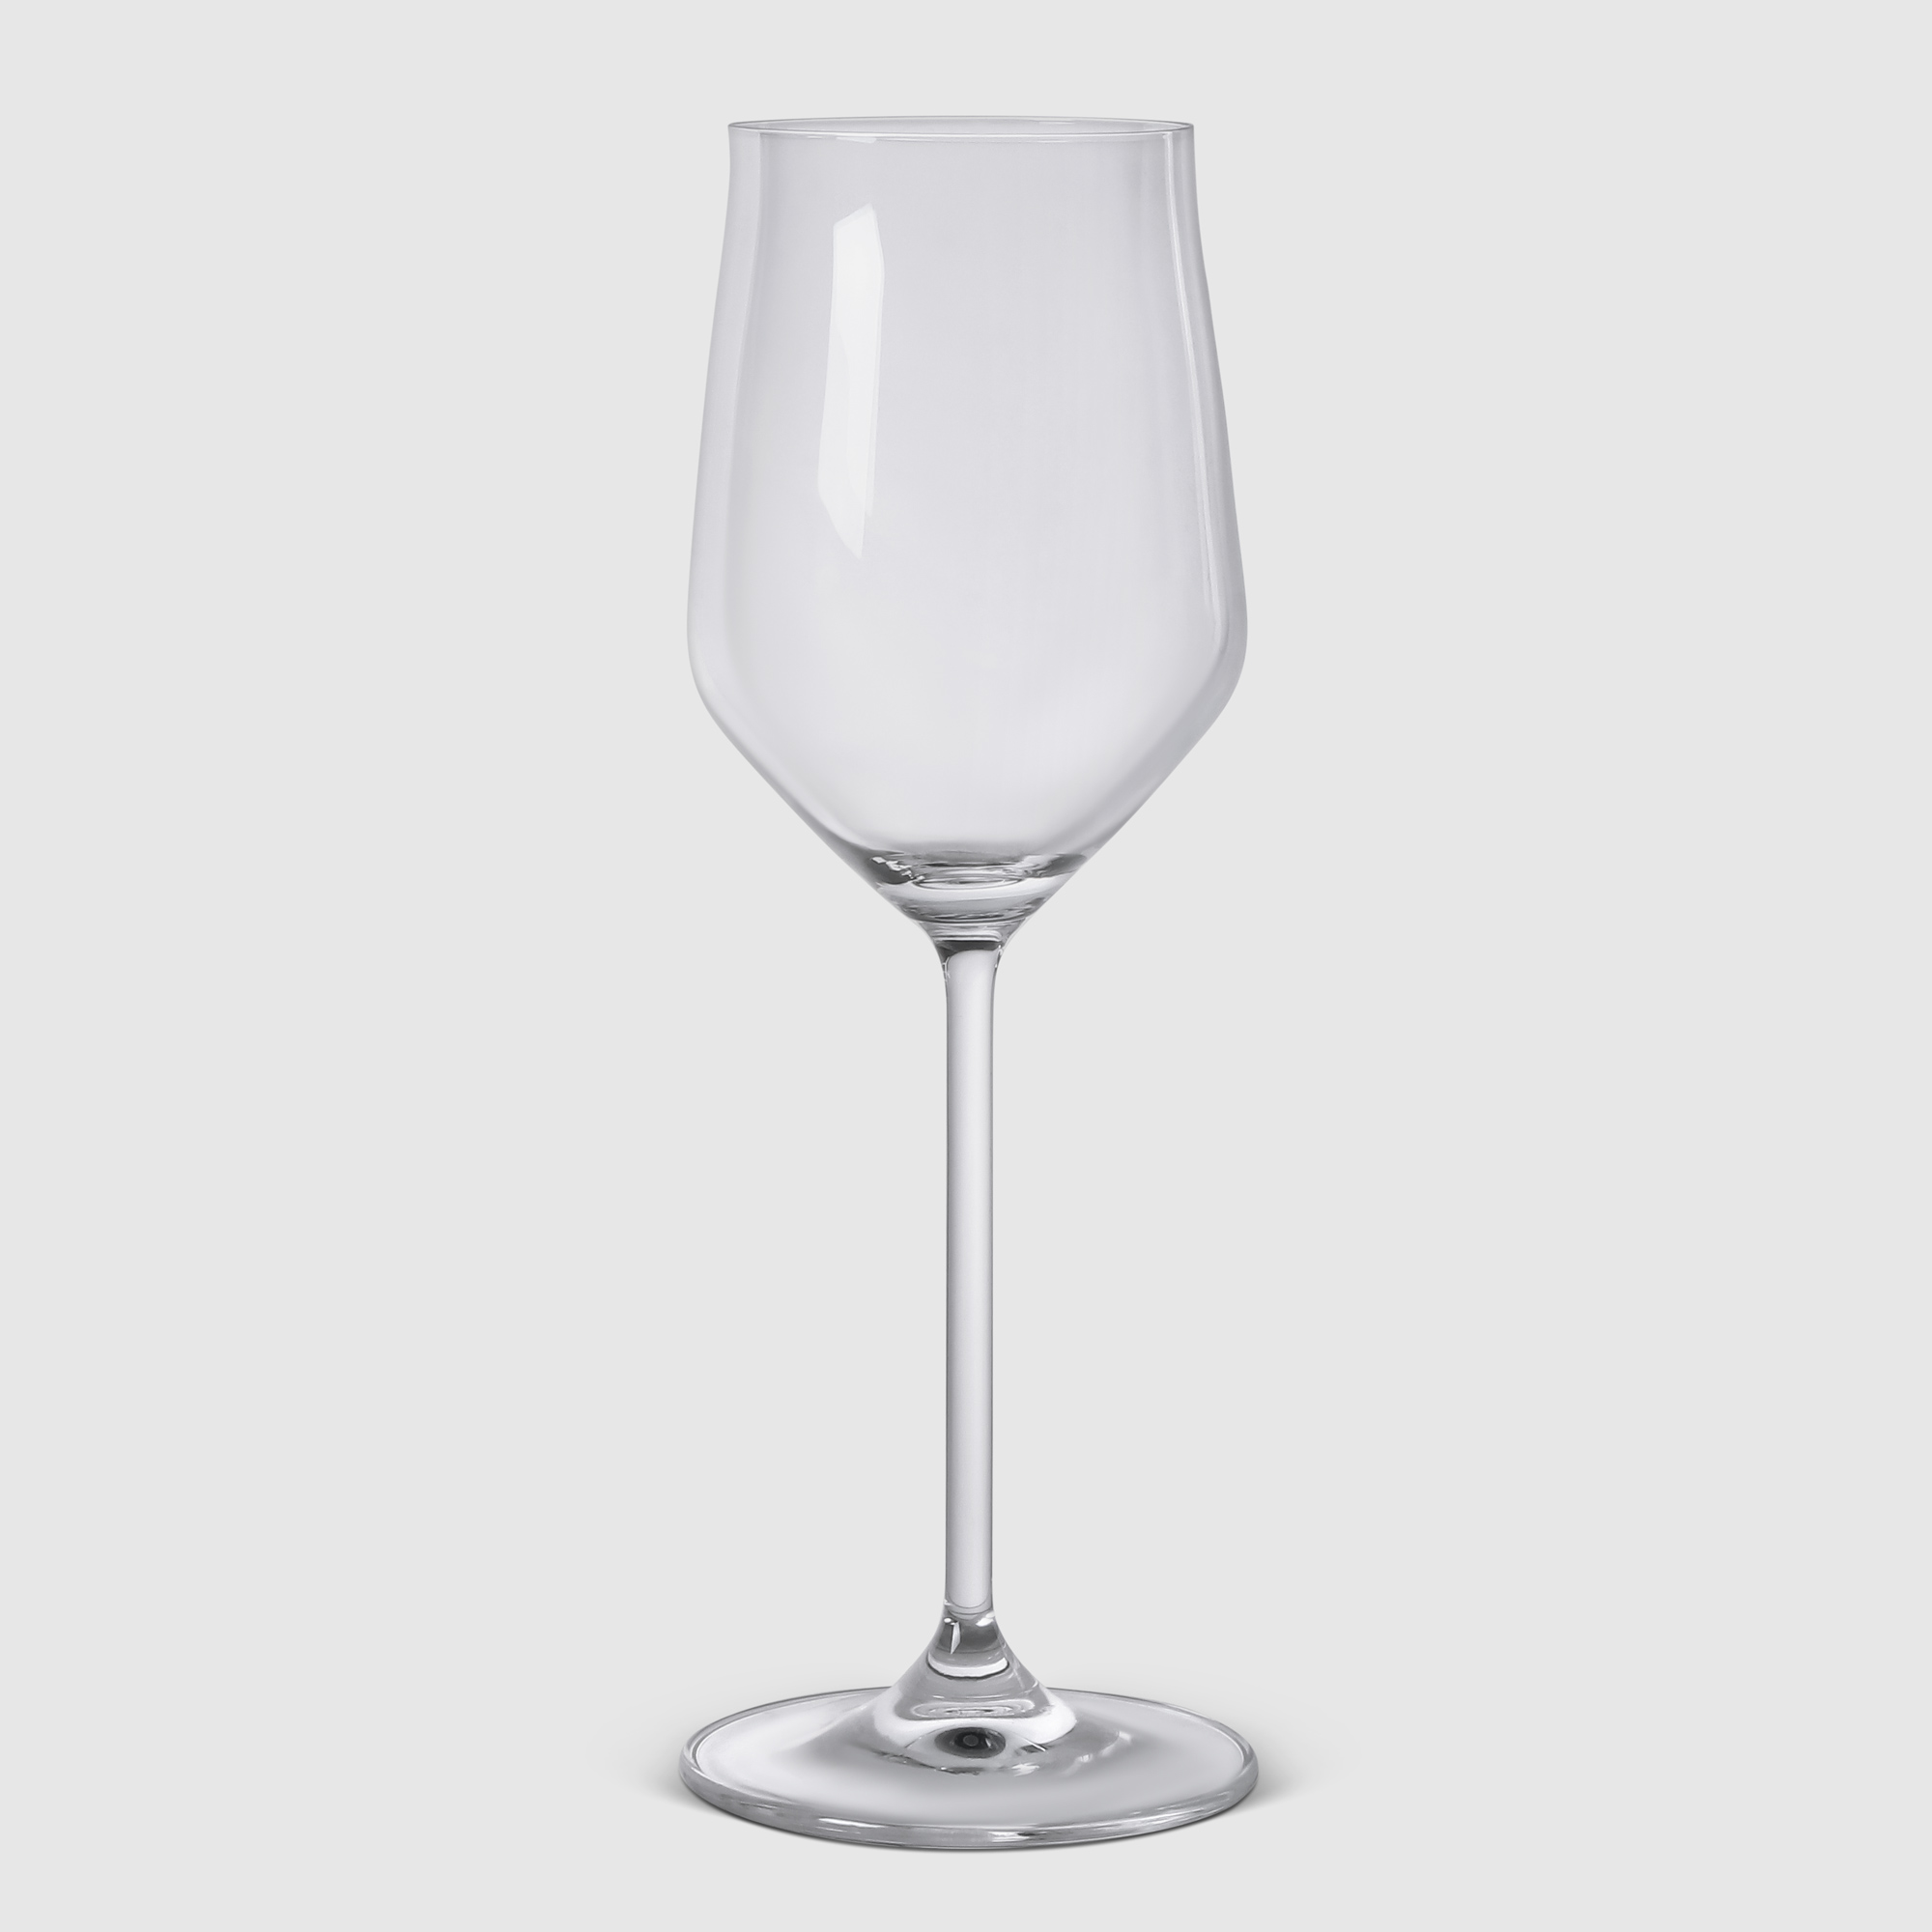 Бокал Wittkemper 10296700 для белого вина, цвет прозрачный - фото 1